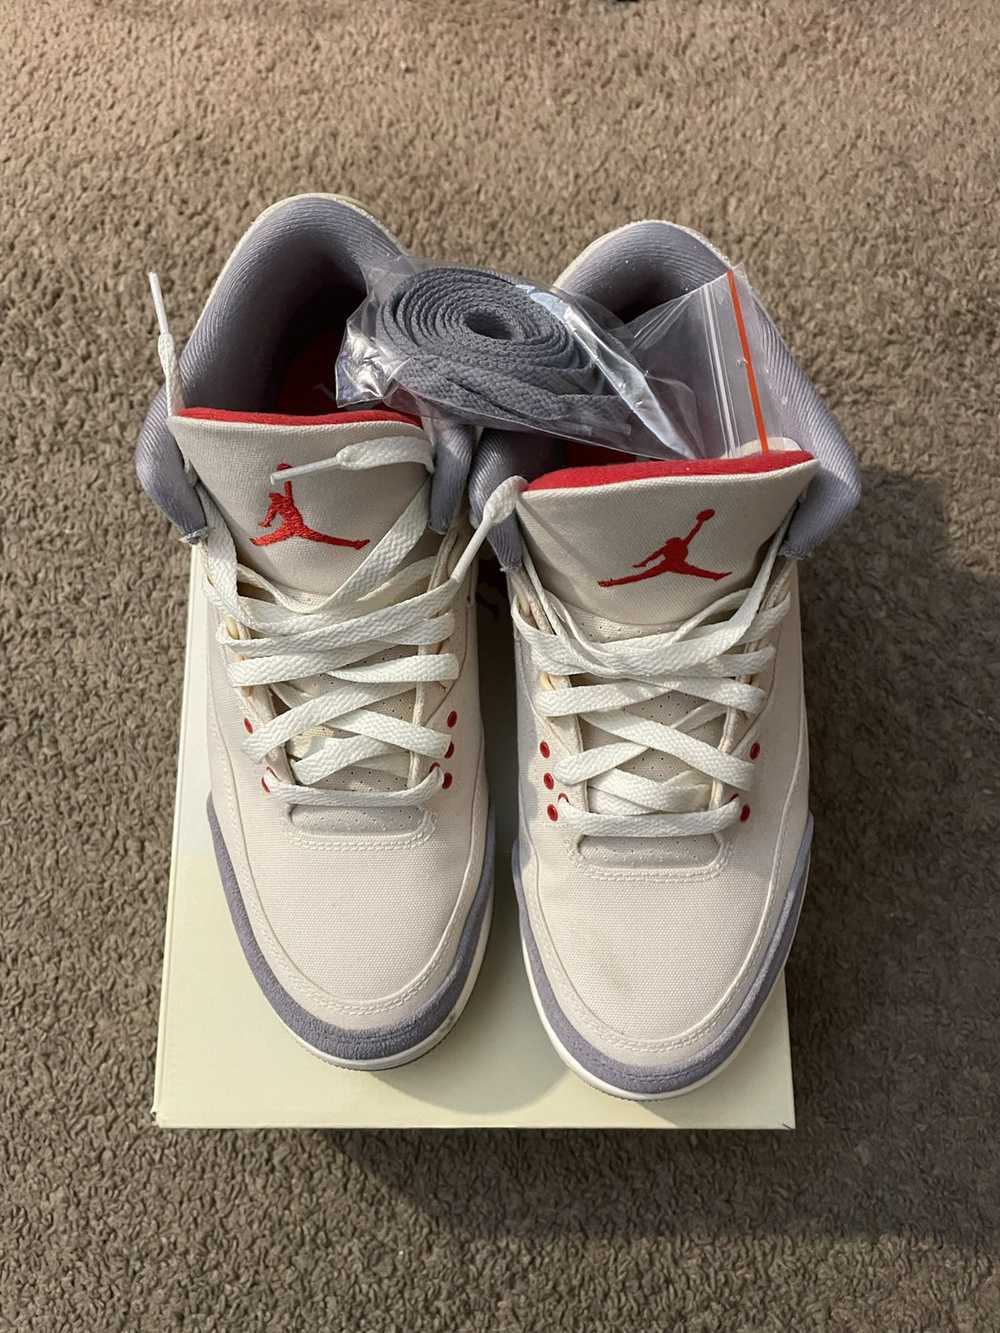 Jordan Brand × Nike Air Jordan Retro 3 'Muslin' - image 1